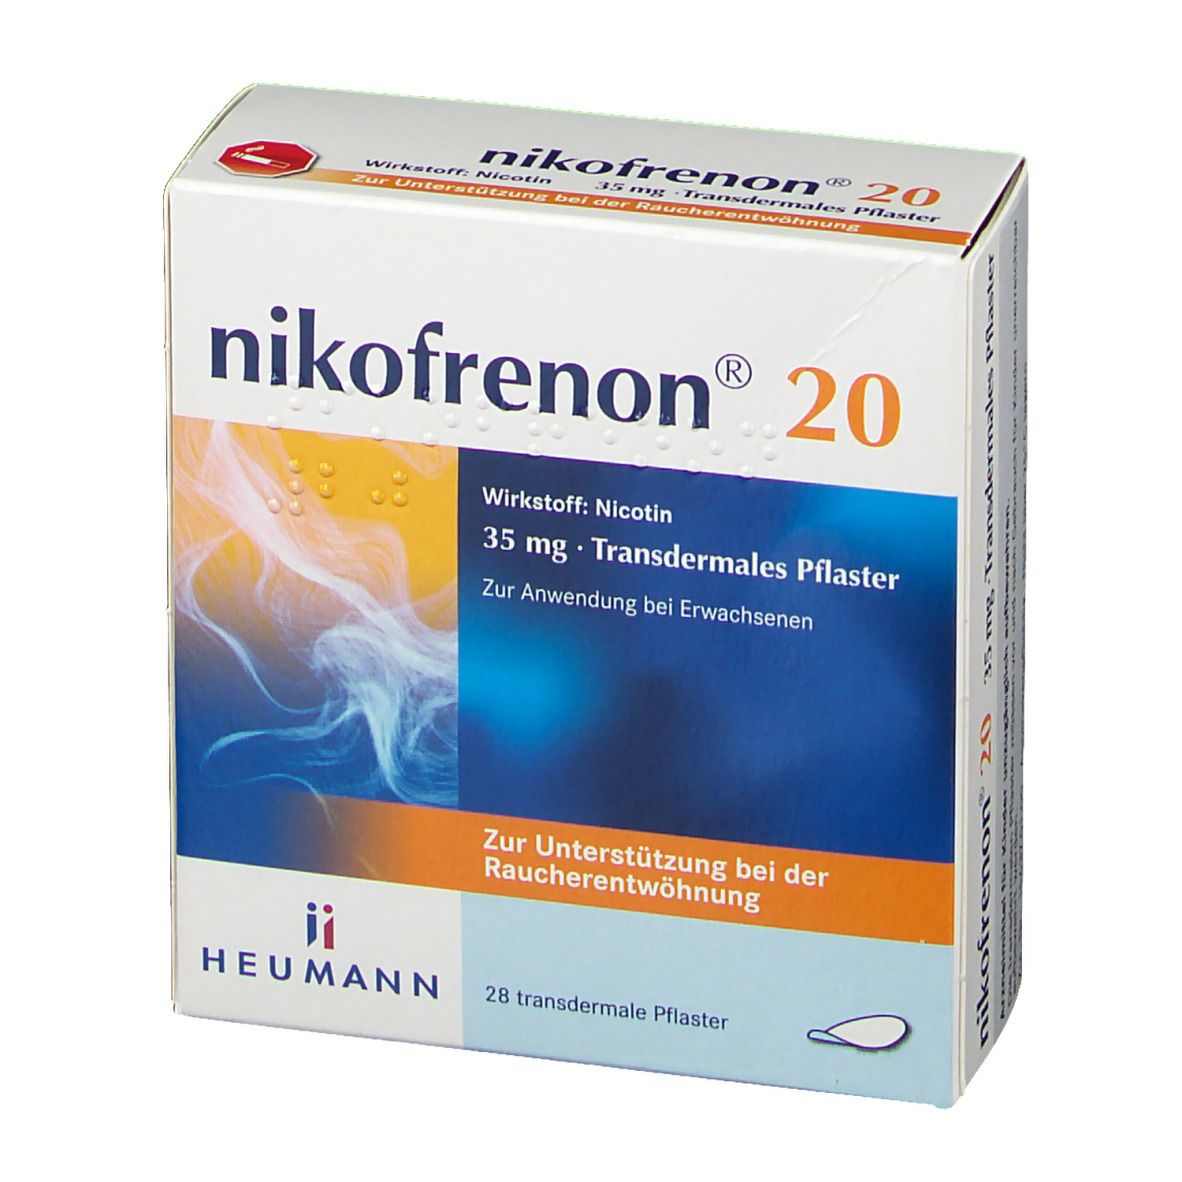 nikofrenon® 20